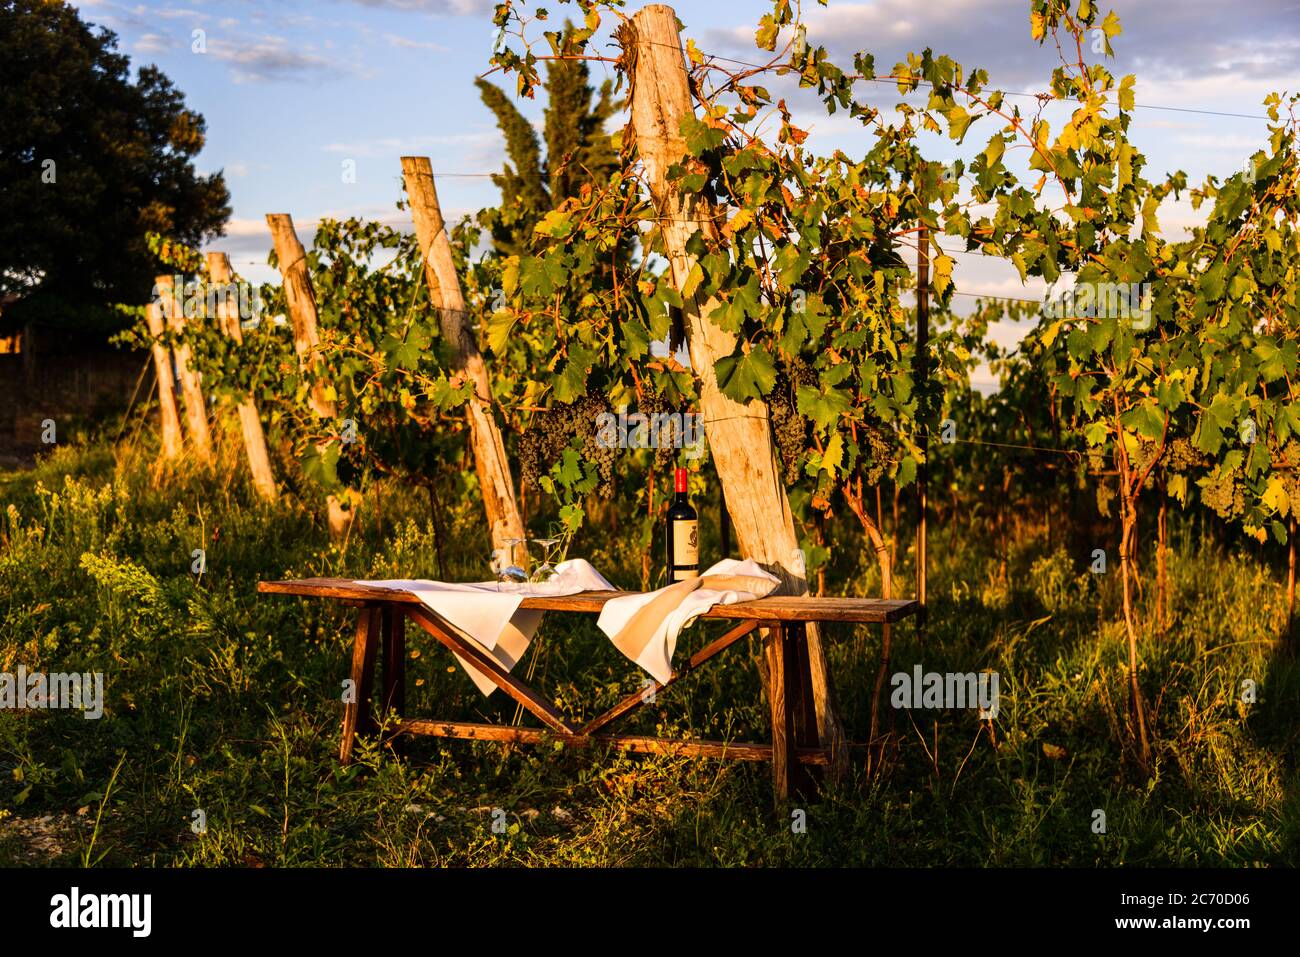 Eine Weinprobe kurz vor Sonnenuntergang in einem der Weinberge der Tenuta di Monaciano ist ein unvergessliches Ereignis. Stock Photo